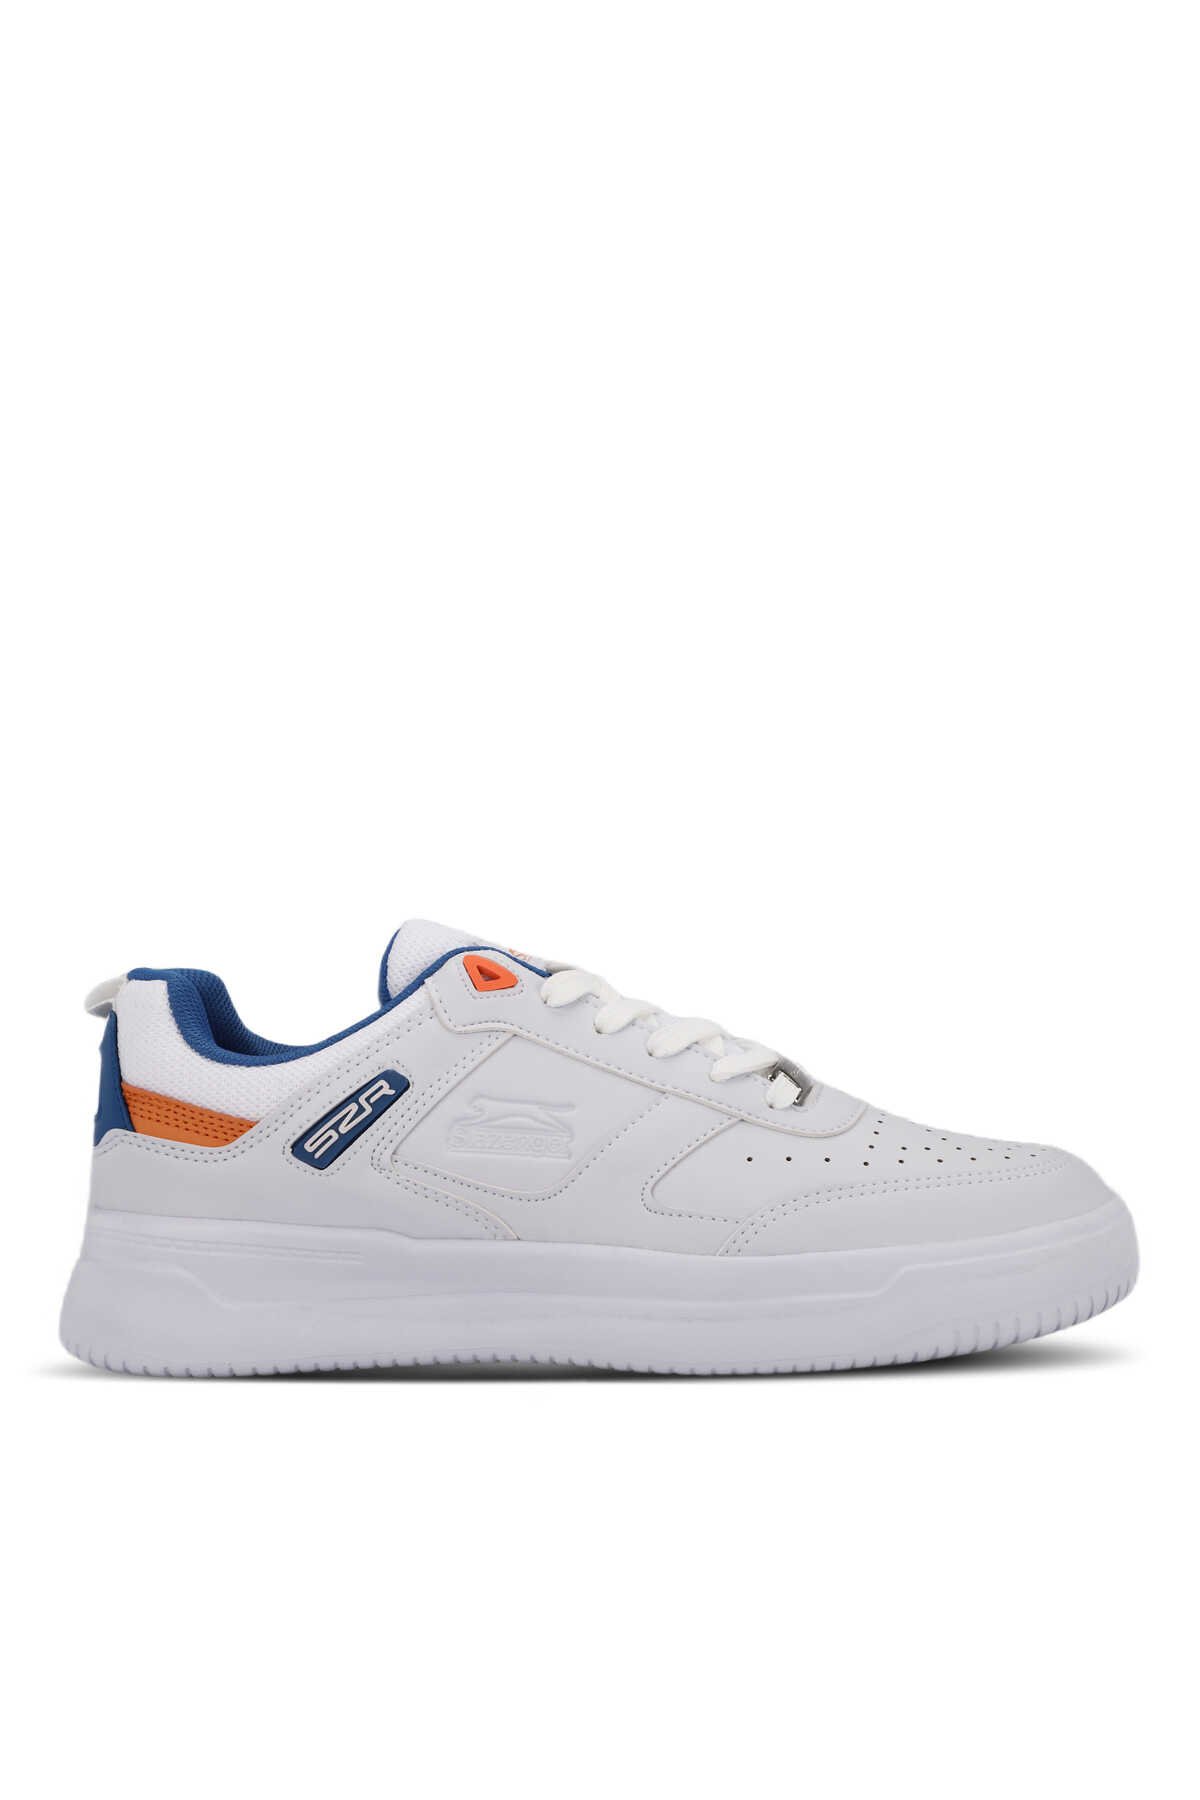 Slazenger - Slazenger PROJECT Erkek Sneaker Ayakkabı Beyaz / Saks Mavi